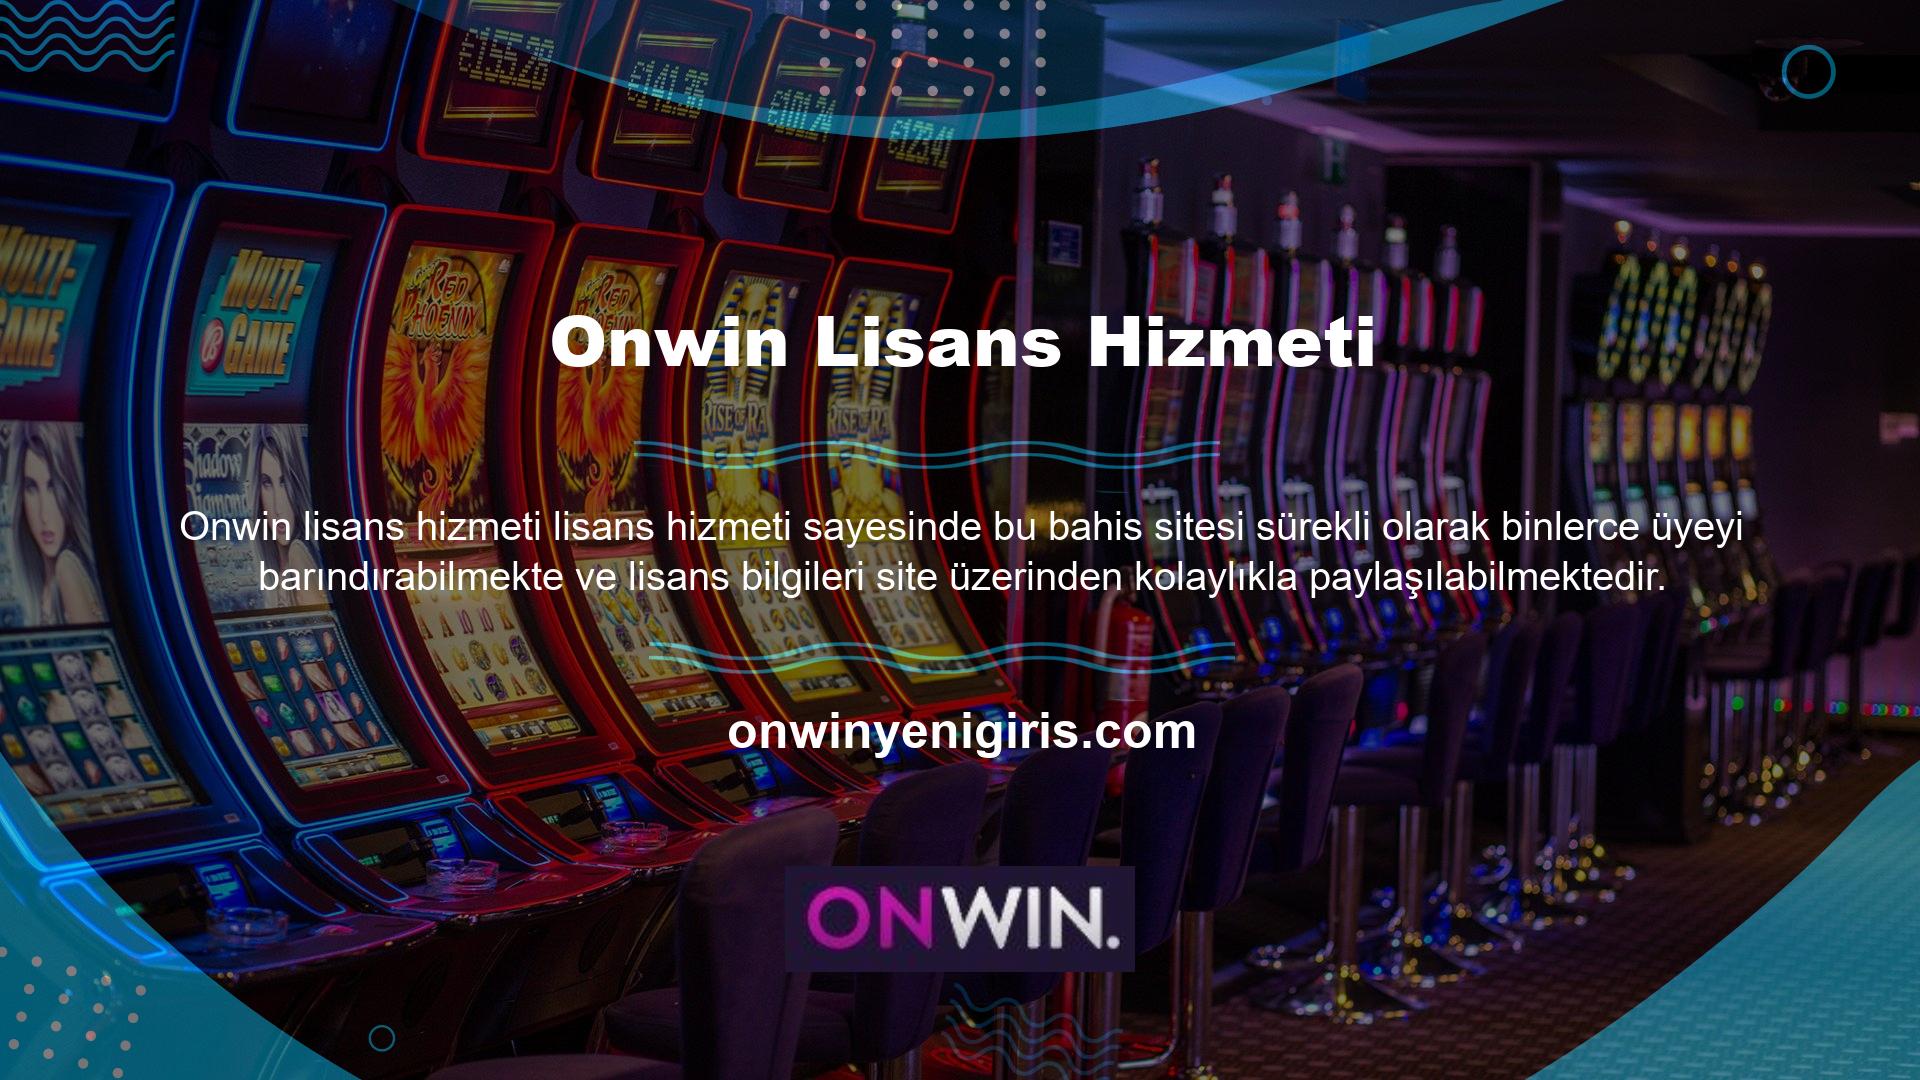 Onwin giriş adresi, Onwin bonusu ve Onwin güvenilir olup olmadığı hakkında daha fazla bilgi için lütfen web sitemizi takip edin veya Onwin sosyal medya hesaplarını ziyaret edin